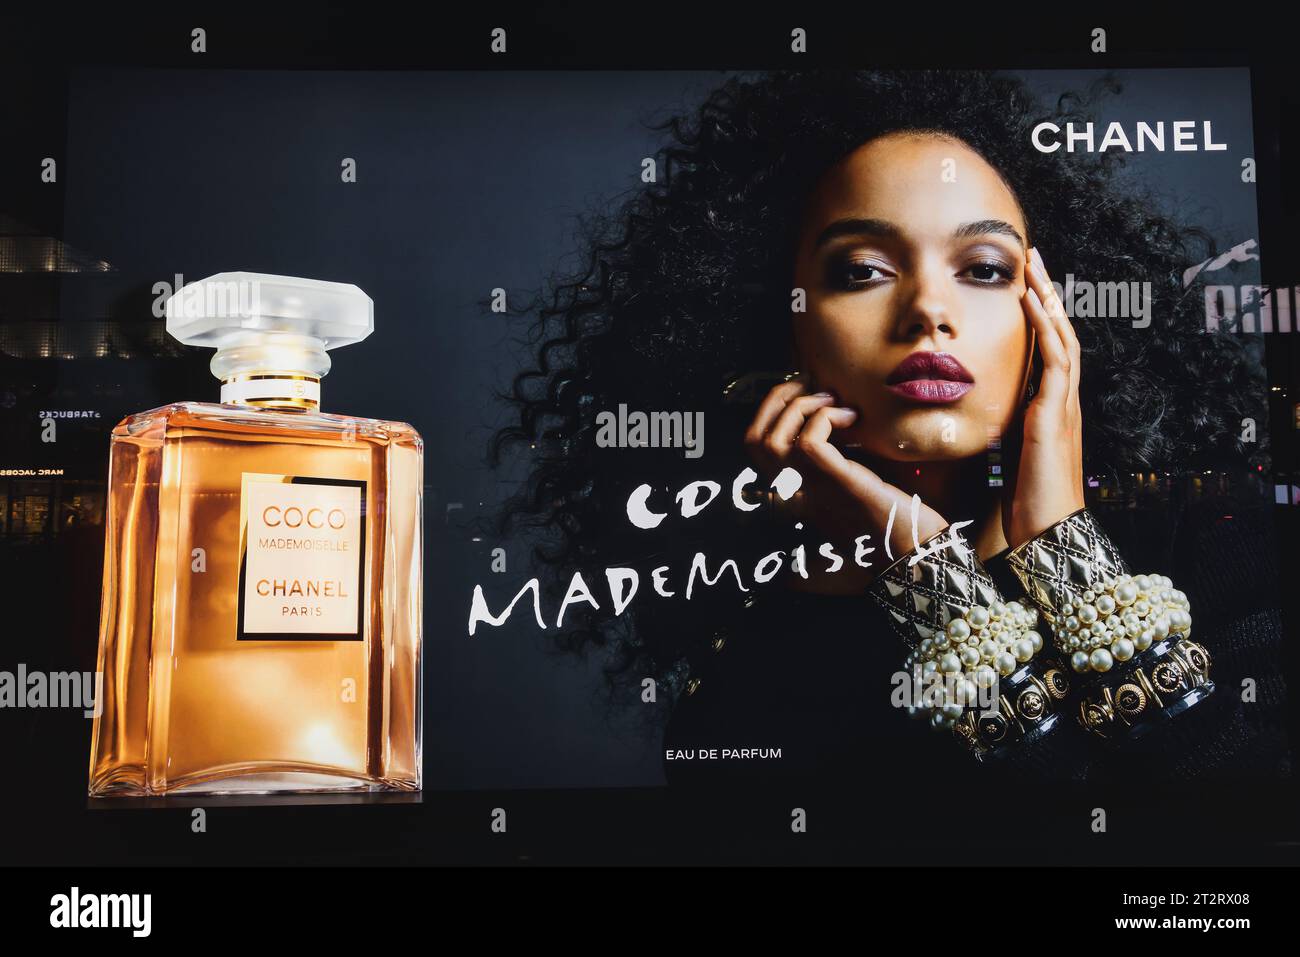 Chanel perfume coco immagini e fotografie stock ad alta risoluzione - Alamy